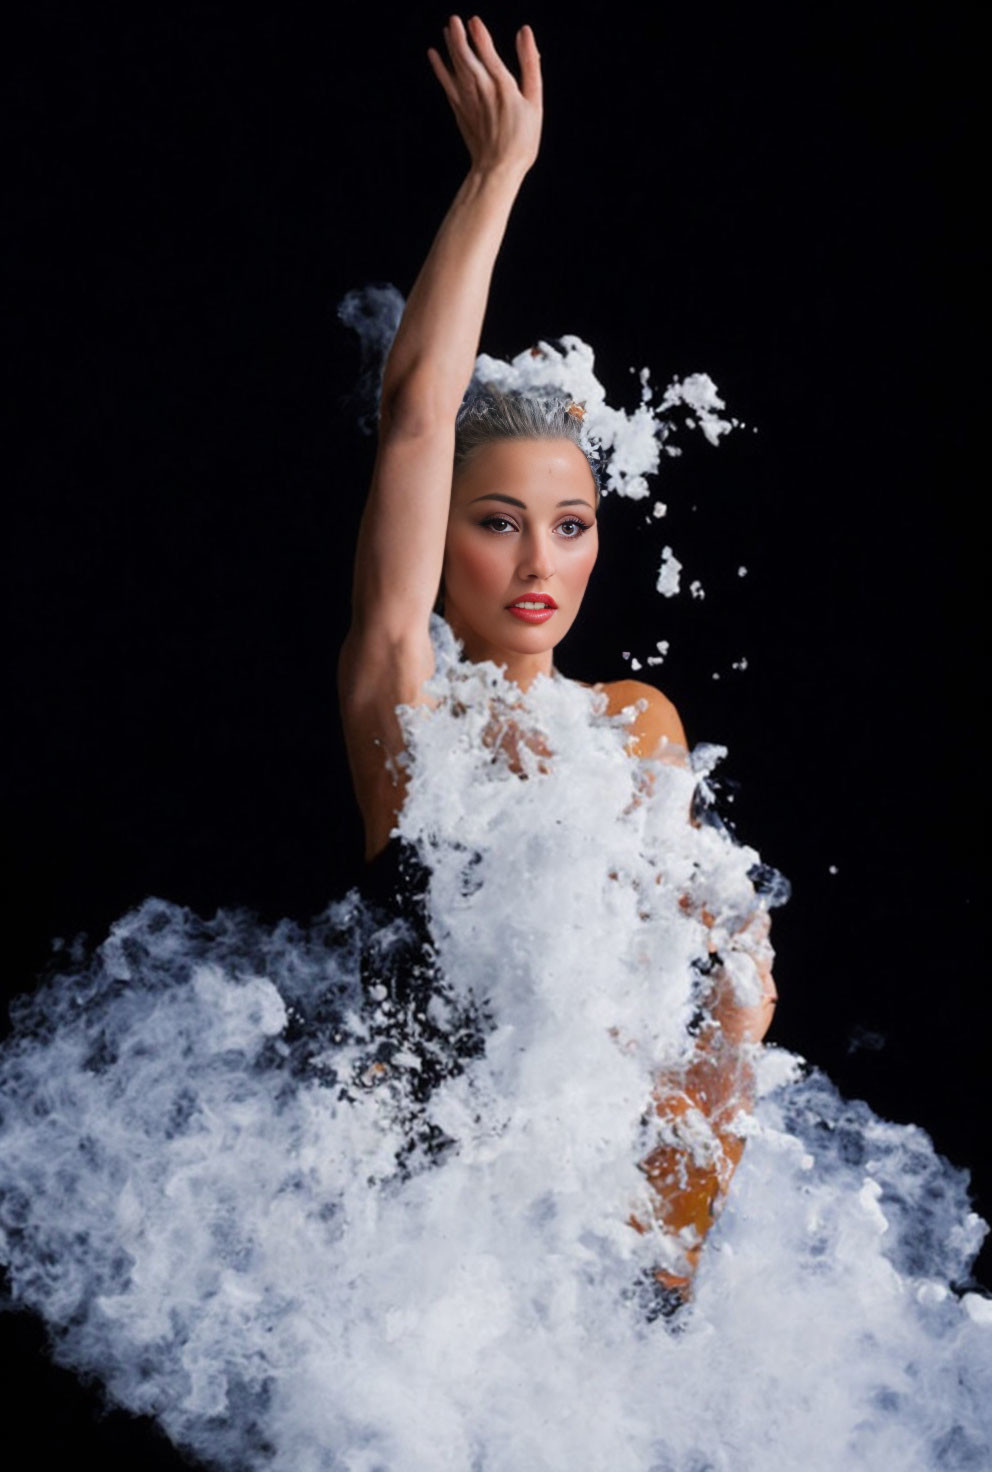 Dynamic pose of woman emerging from splashing water